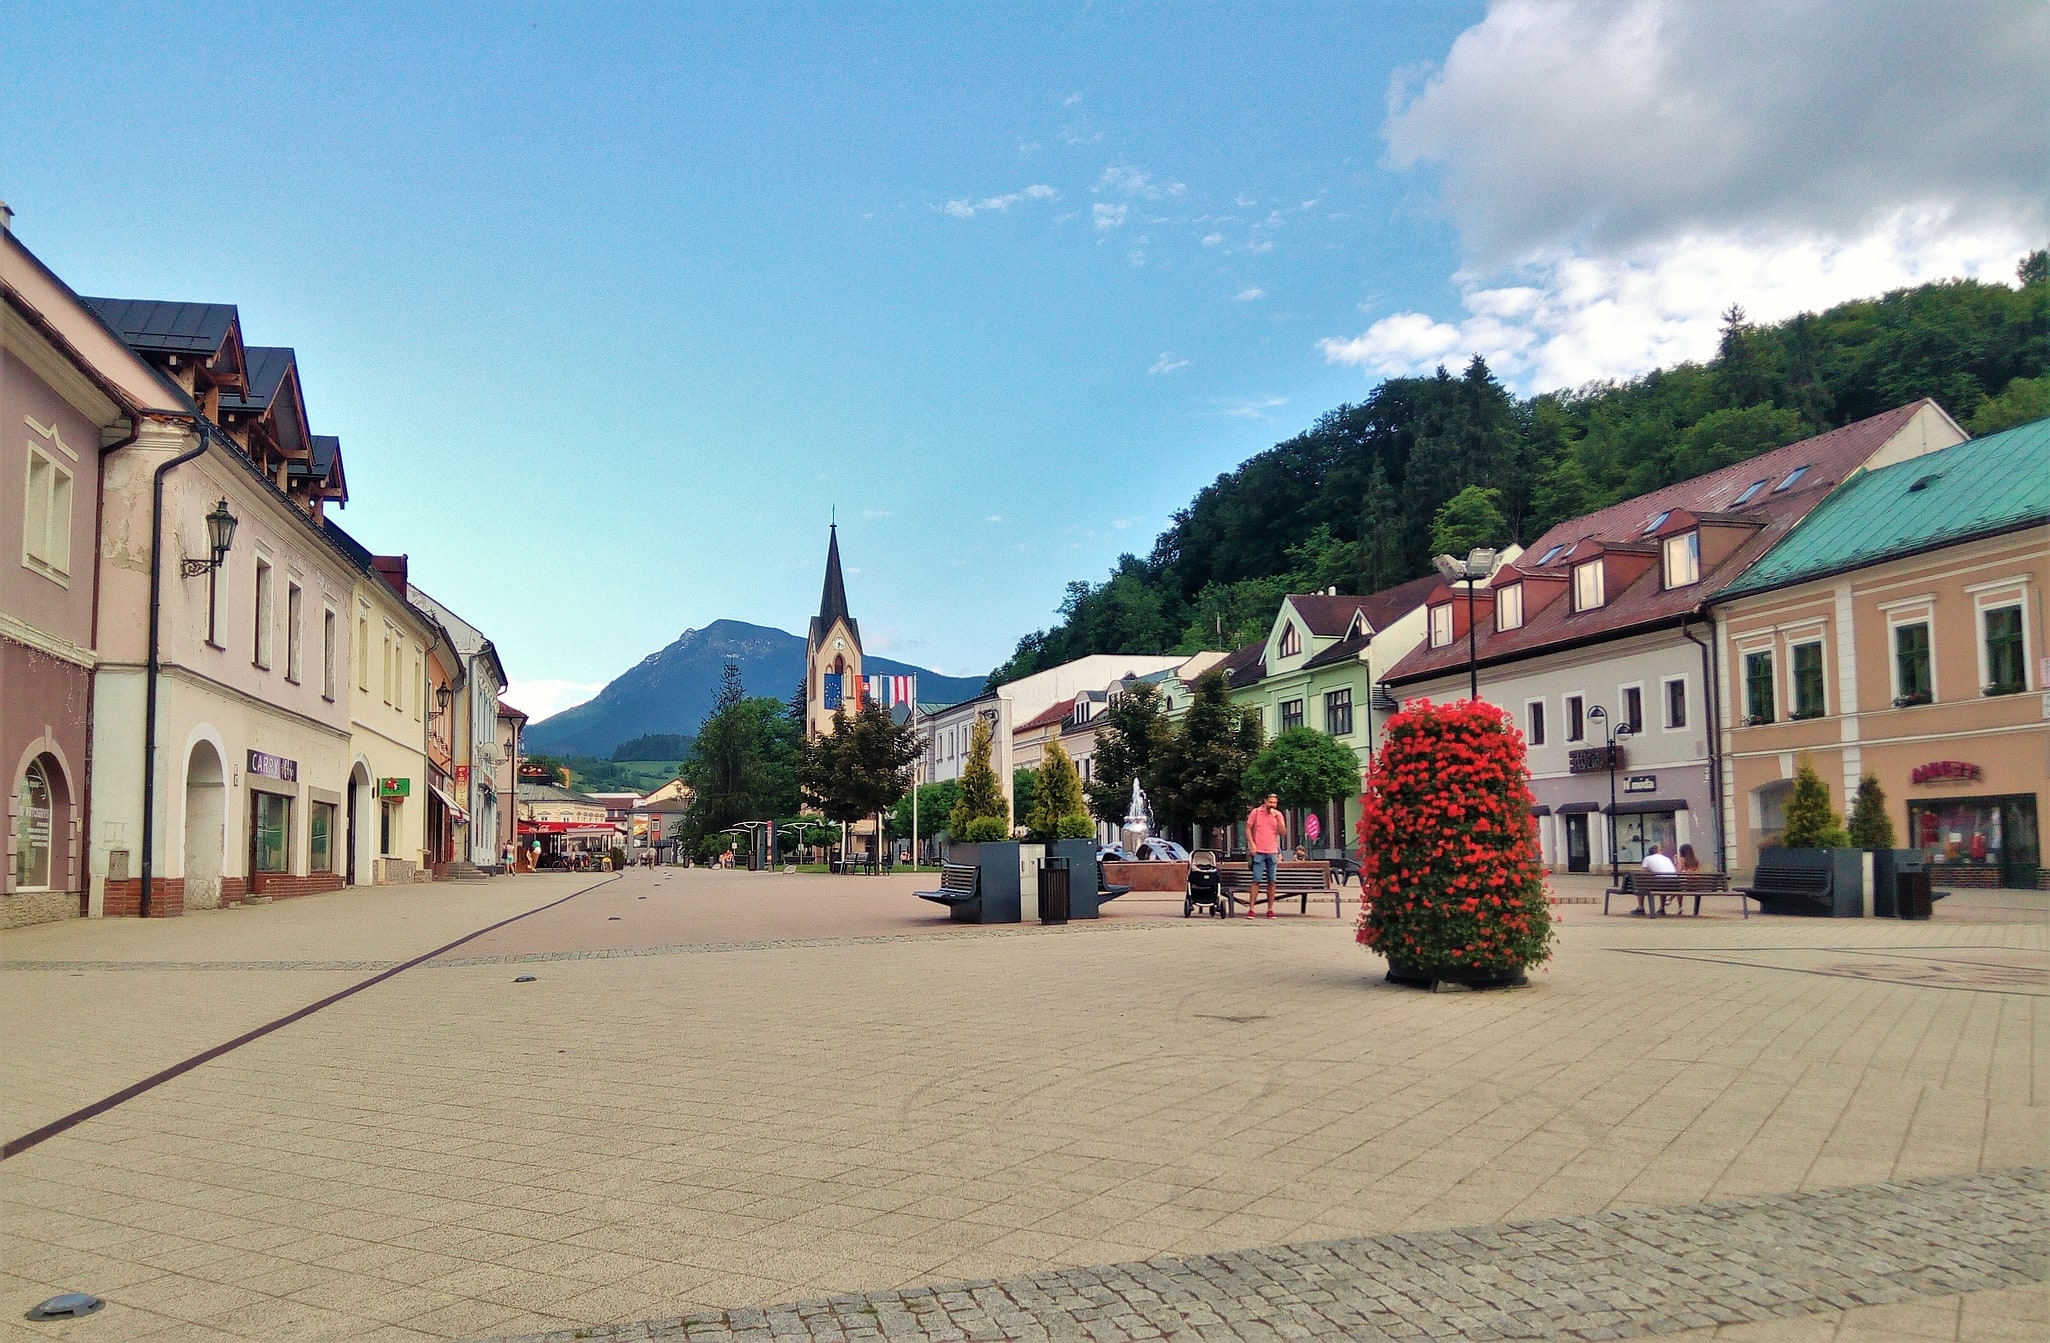 Dolny Kubin, Slovakia